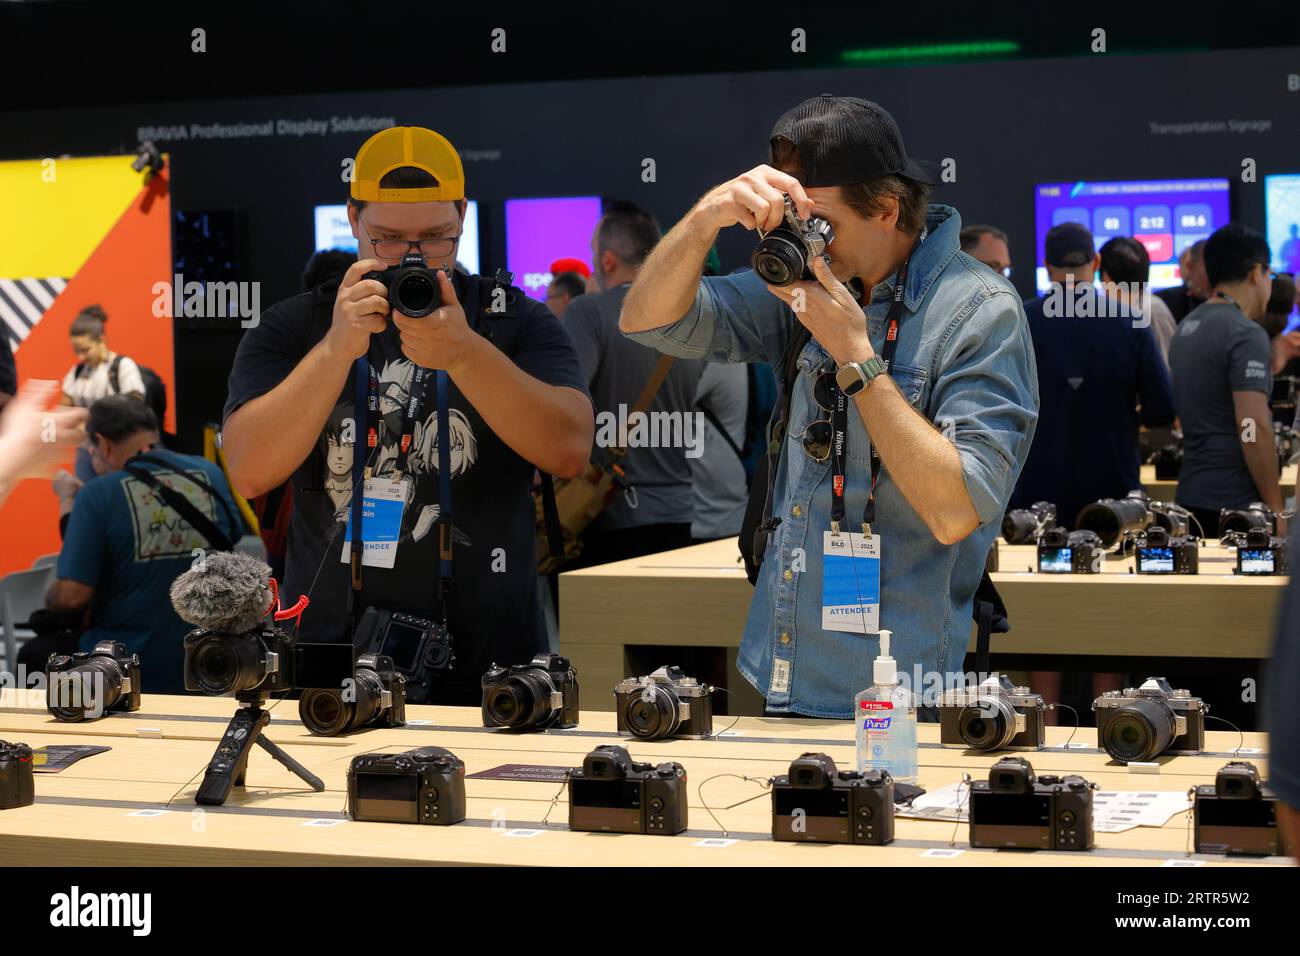 Auf einer Fotomesse werden spiegellose Nikon Kameras untersucht und ausprobiert Stockfoto